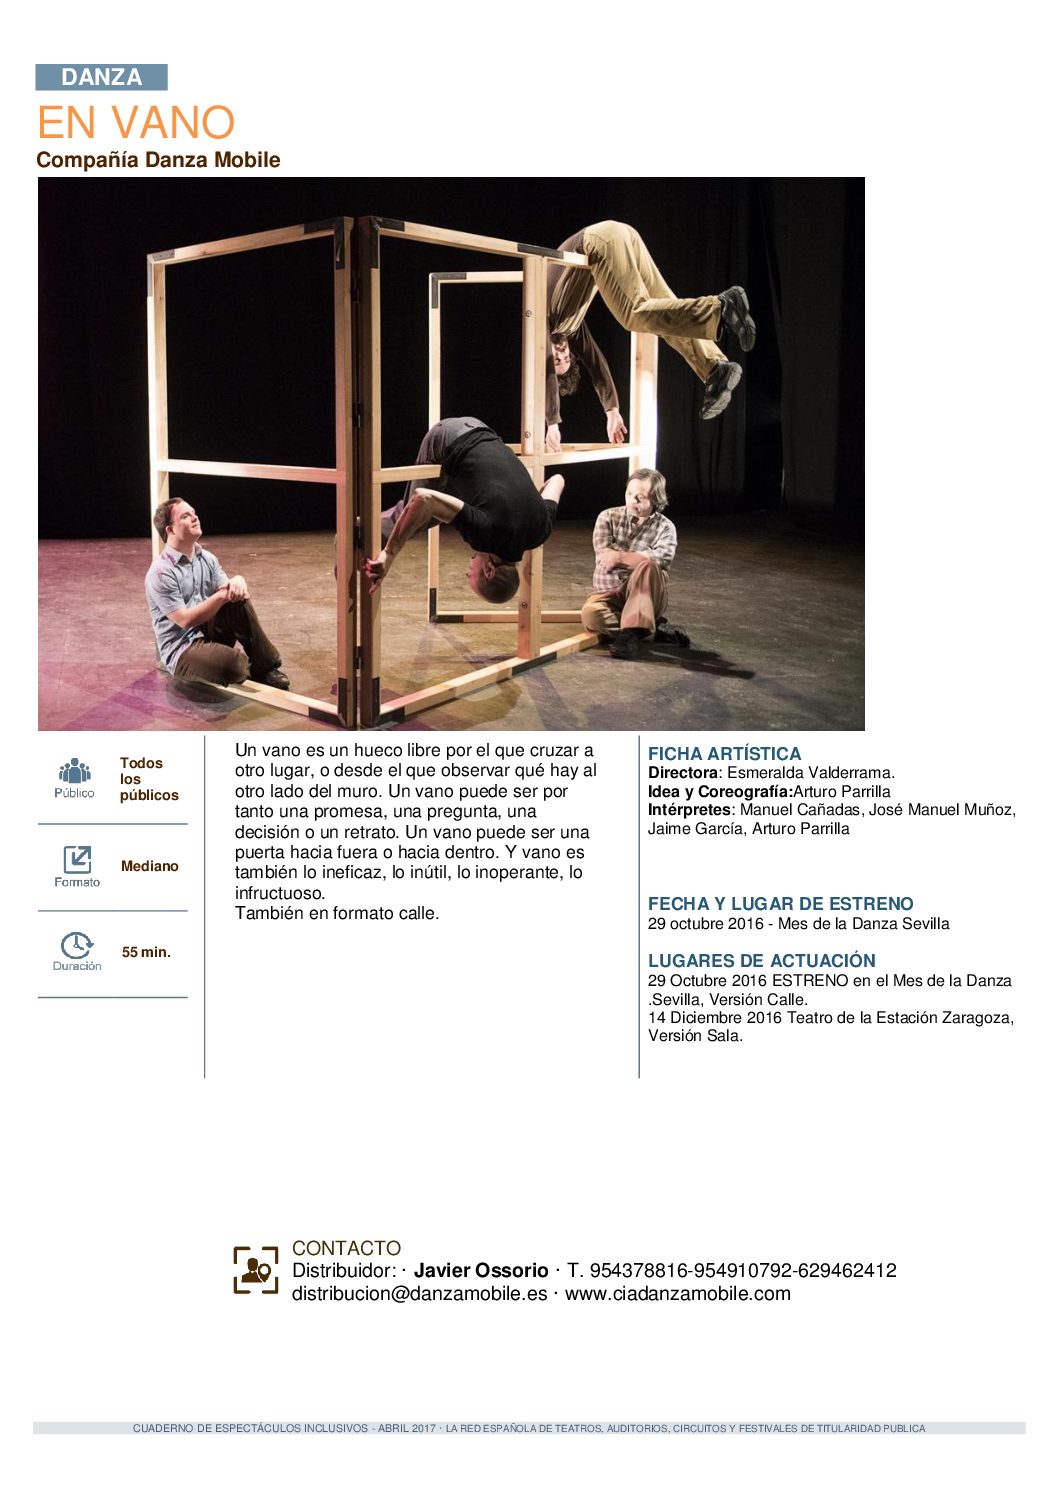 La Red Española de Teatros incluye 'En Vano' en su primer cuaderno de espectáculos inclusivo